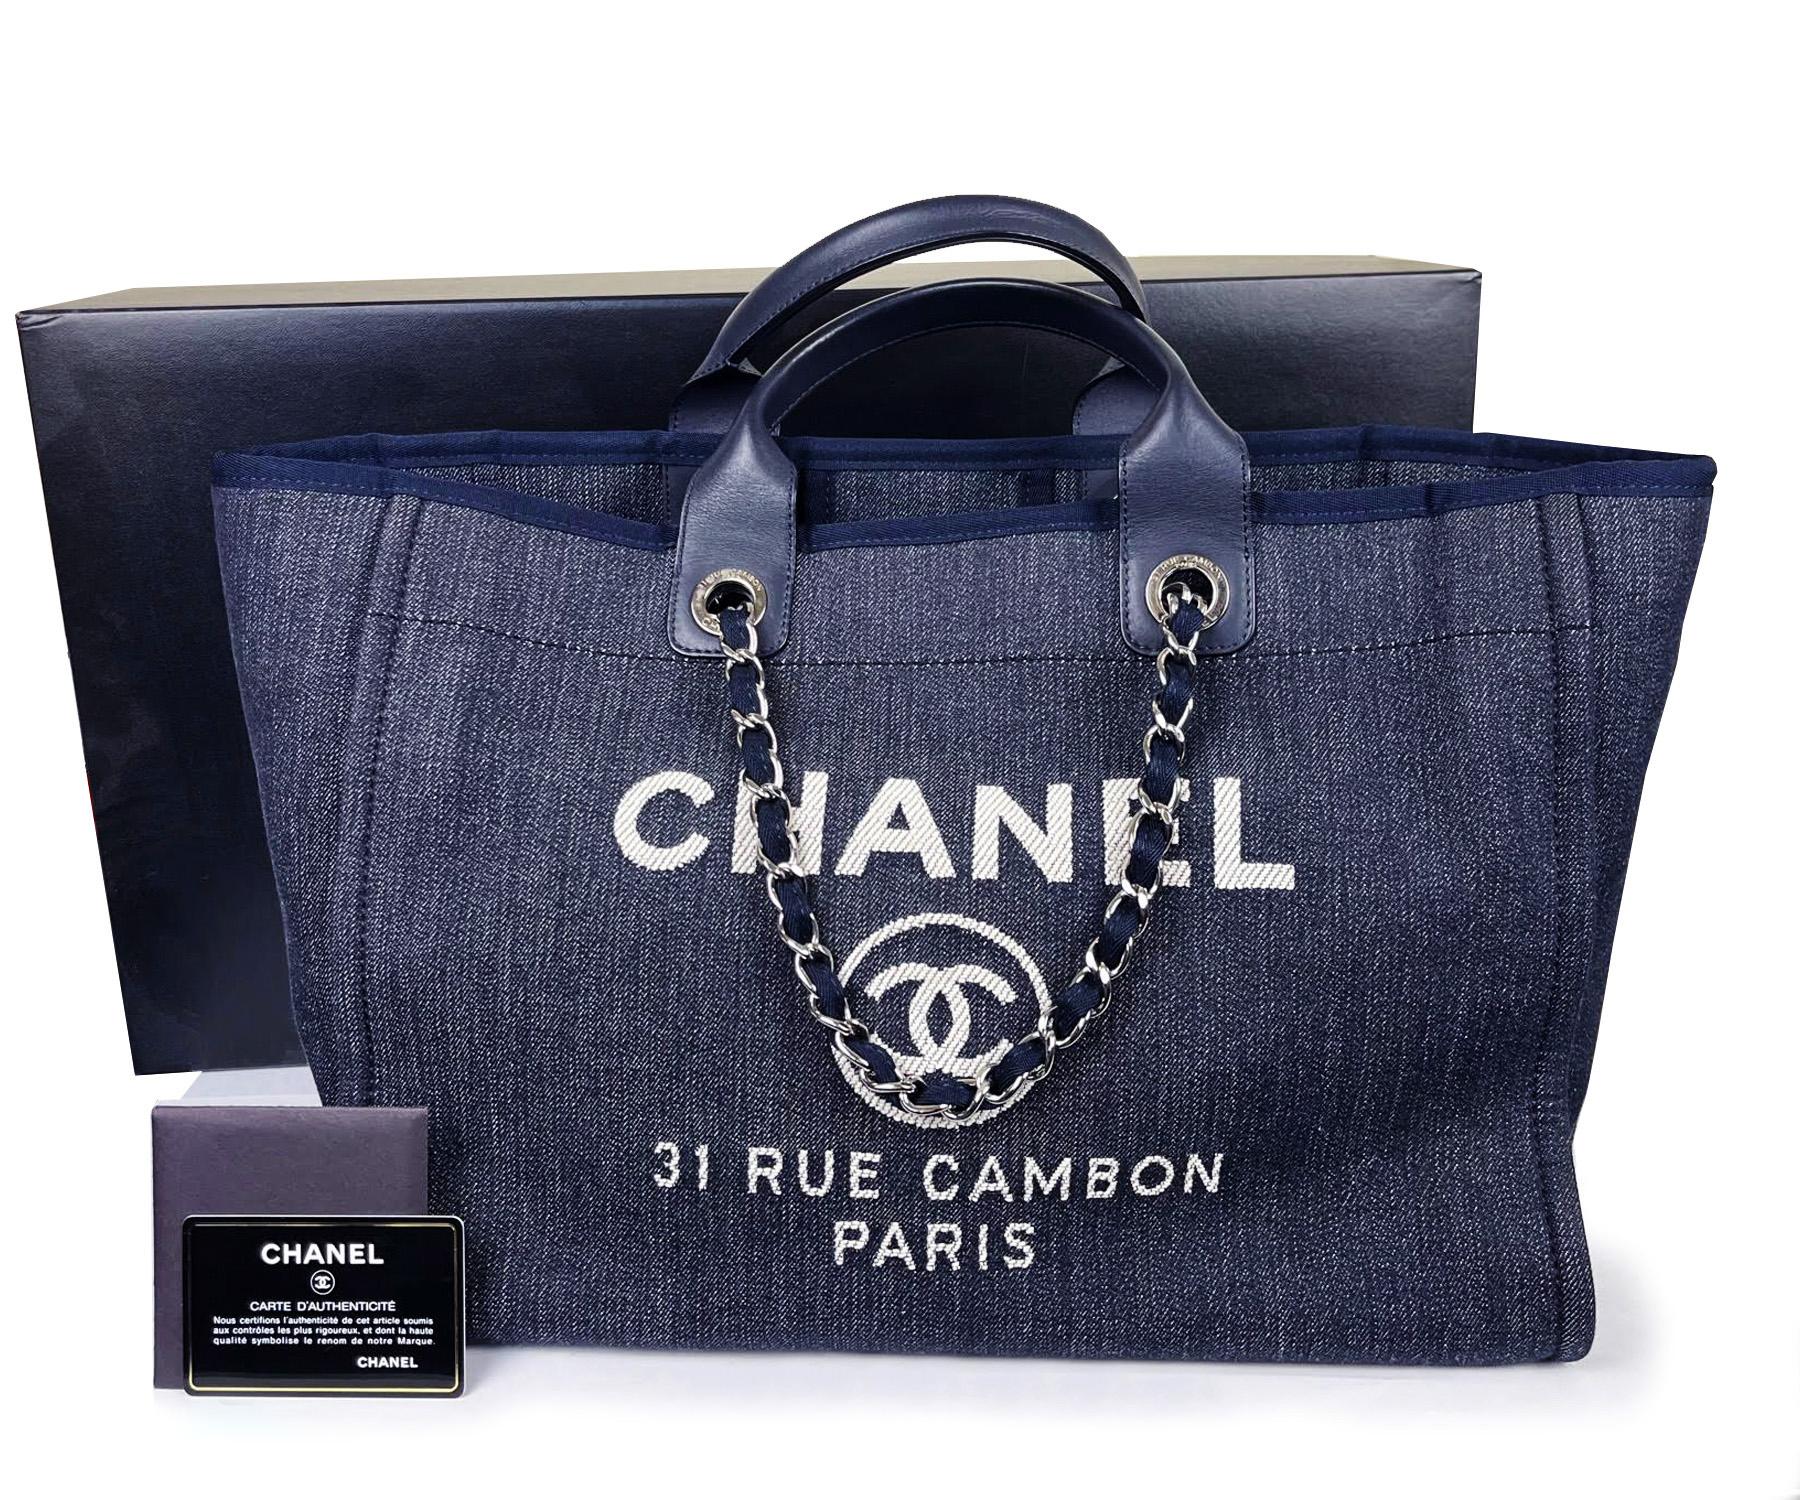 Chanel Sold Out Navy Denim Deauville Tote Shoulder Bag

*marqué 2318XXXX
*Fabriqué en Italie
*Livré avec la boîte d'origine, la carte de numéro de contrôle et le livret.
* Vu sur Rihanna et Miranda Kerr
* Matériel argenté

-Il mesure environ 14,75